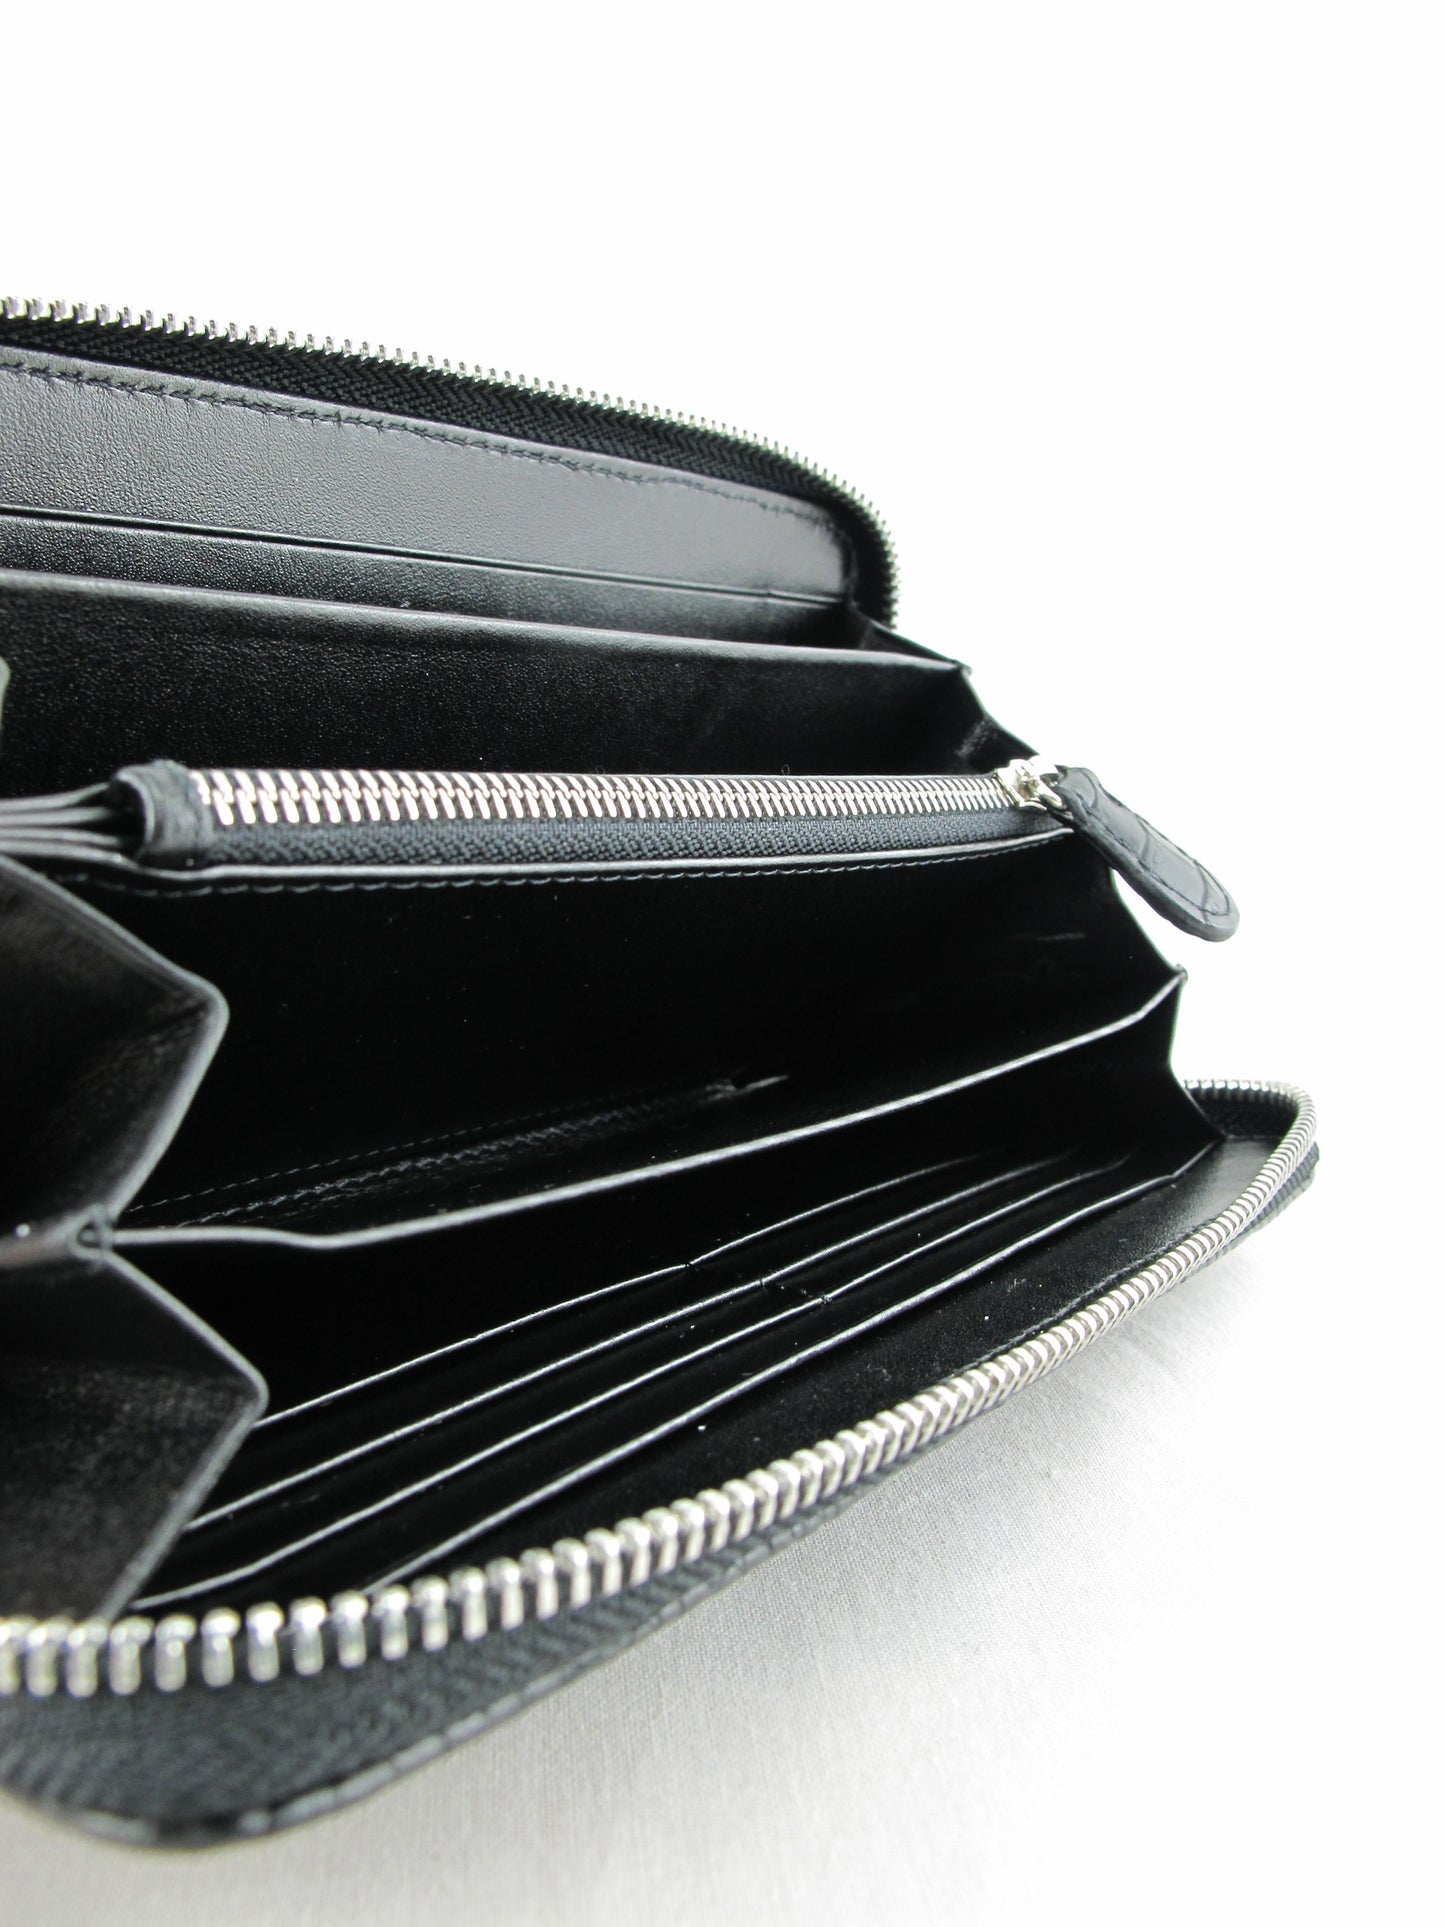 Genuine Reticulated Python Belly Skin Leather Zip Around Clutch Wallet Purse